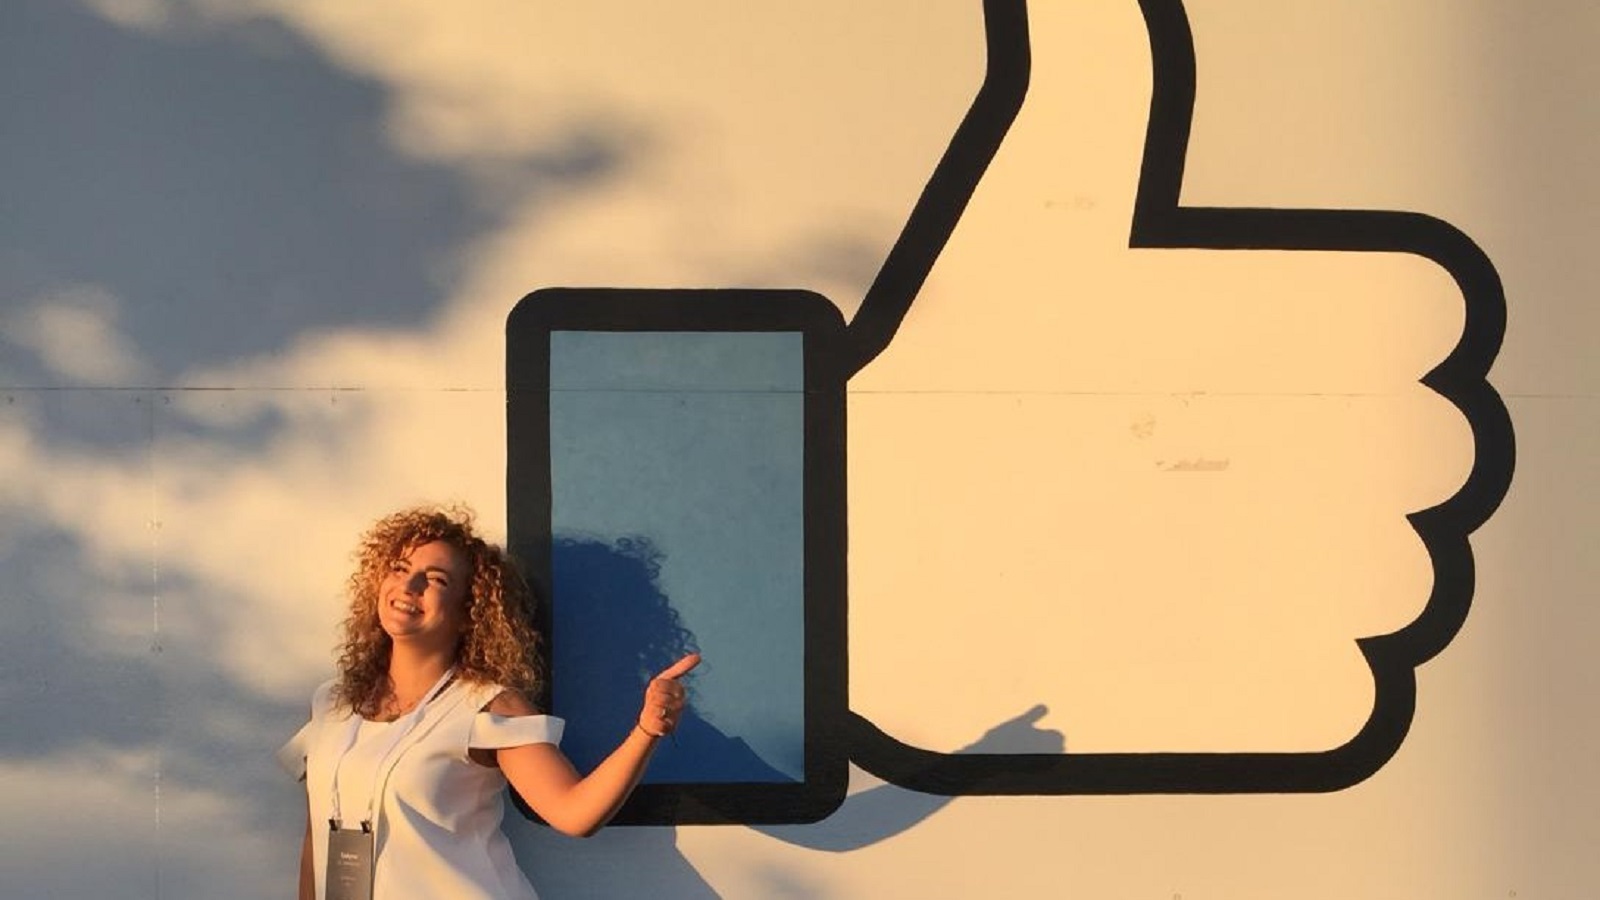 شركة "فايسبوك" تختار سالين السمراني رائدة اجتماعية